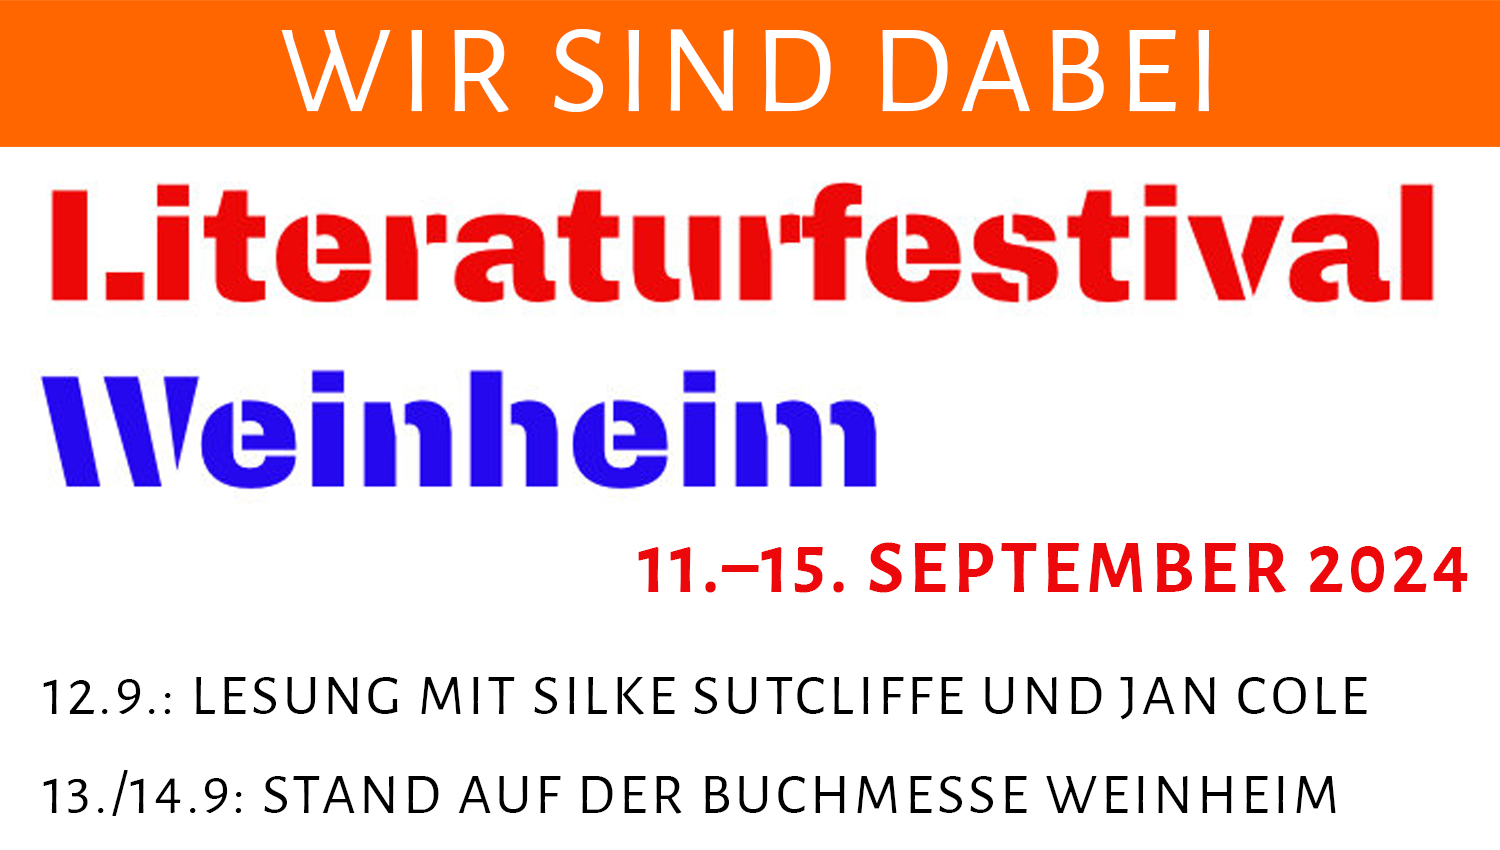 Sliderbild mit Ankündigung Literaturfest Weinheim vom 11. bis zum 15. September 2024